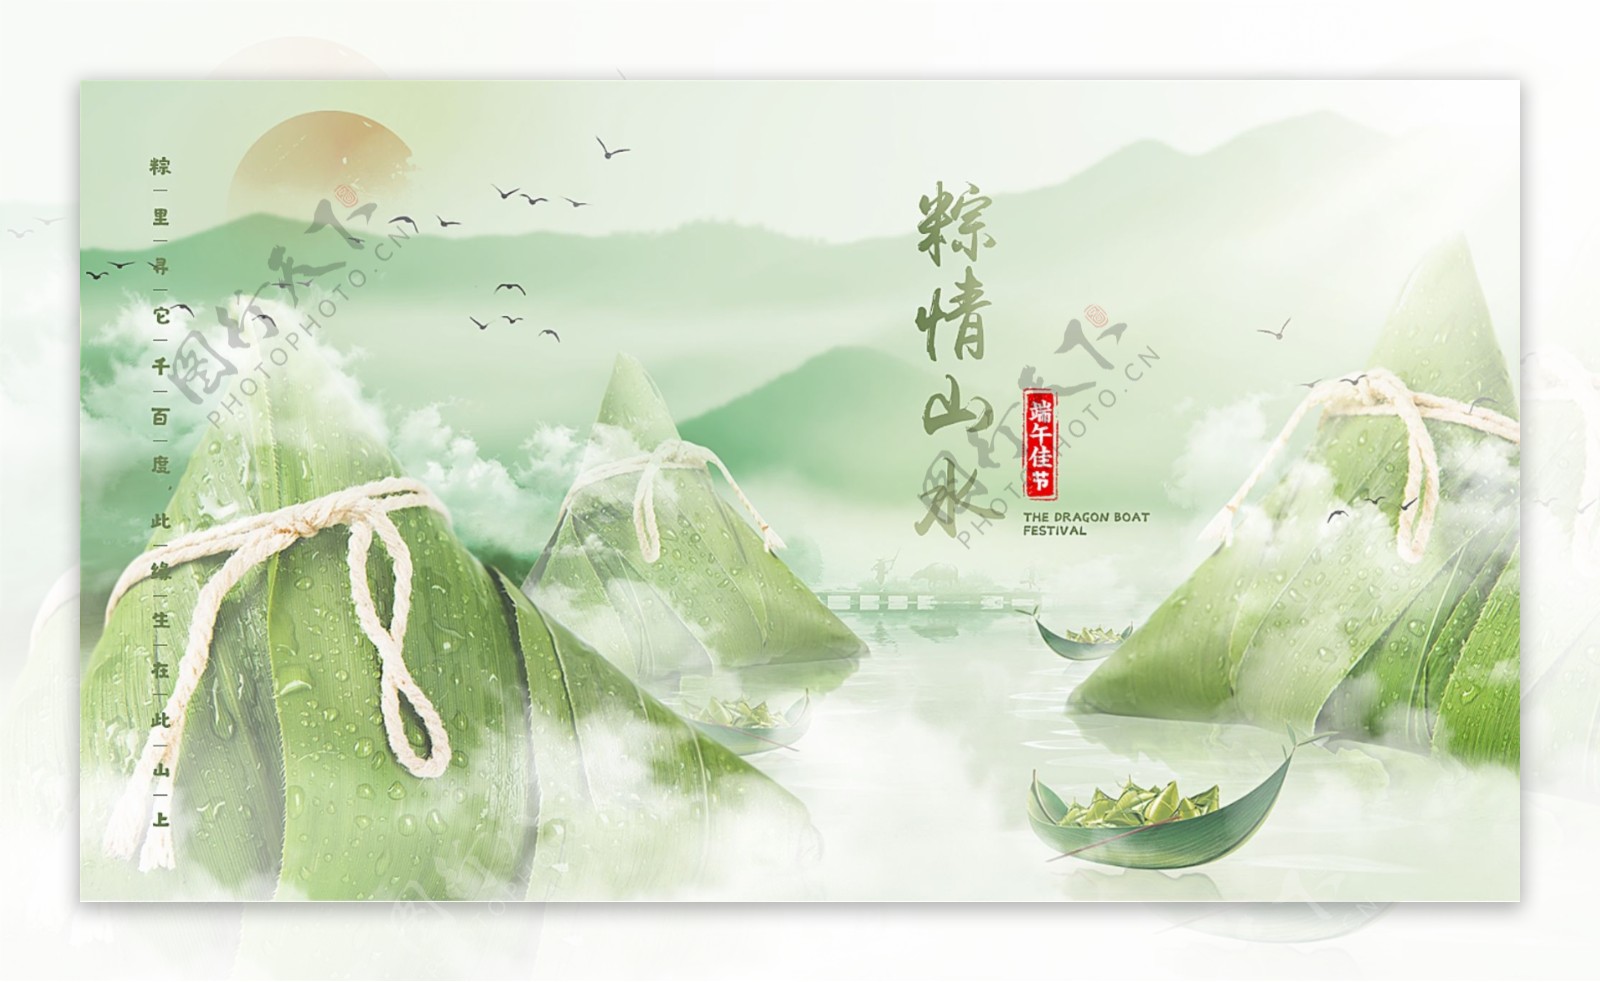 端午节粽子节日海报中国风设计